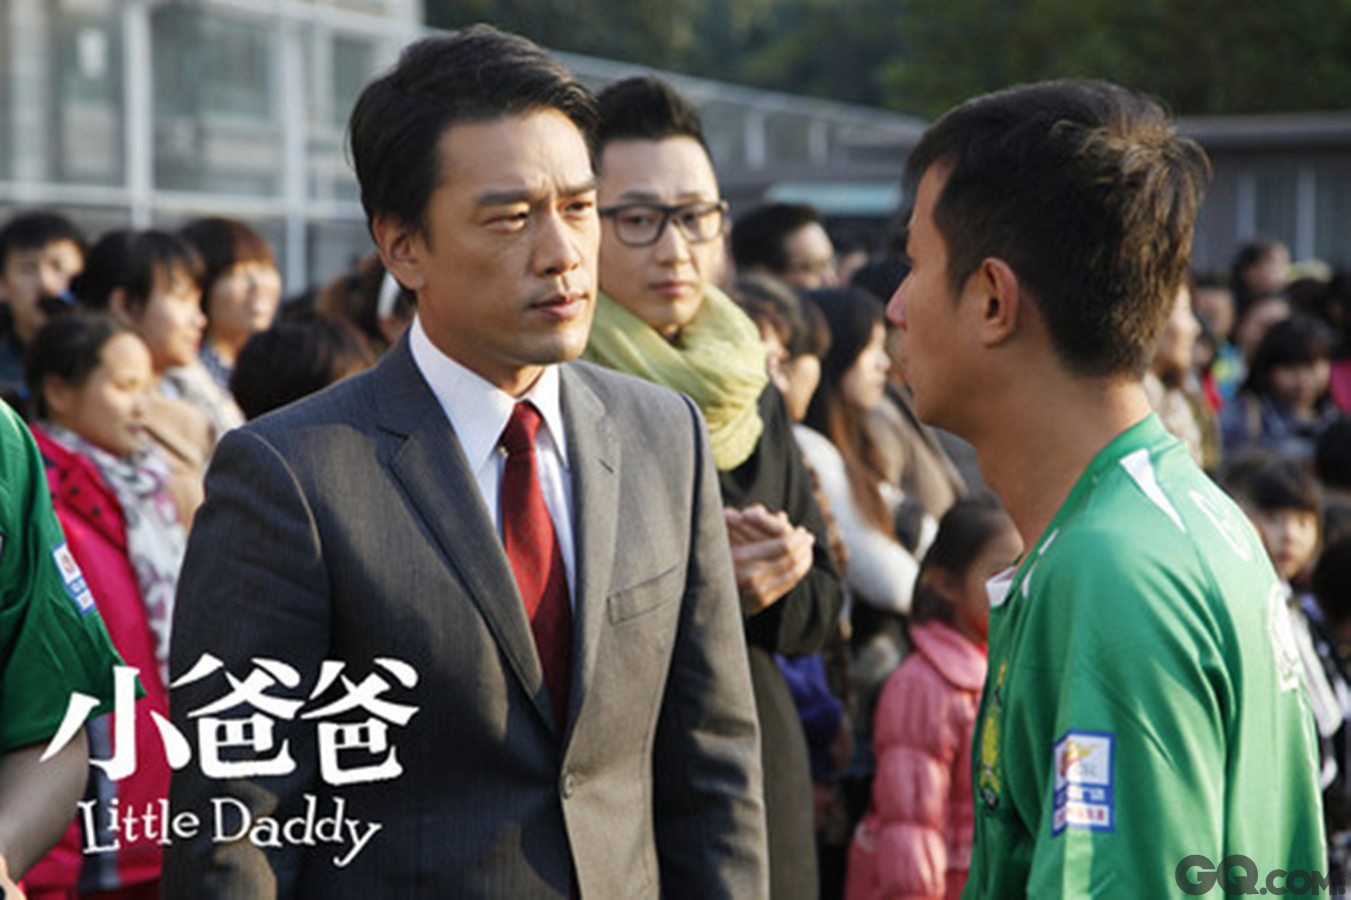 同年，王耀庆在都市温情剧《小爸爸》中饰演美国职业律师“泰勒”一角。2014年，王耀庆在偶像电视剧《唱战记》中饰演一位德高望重的“选秀教父”西城一角。